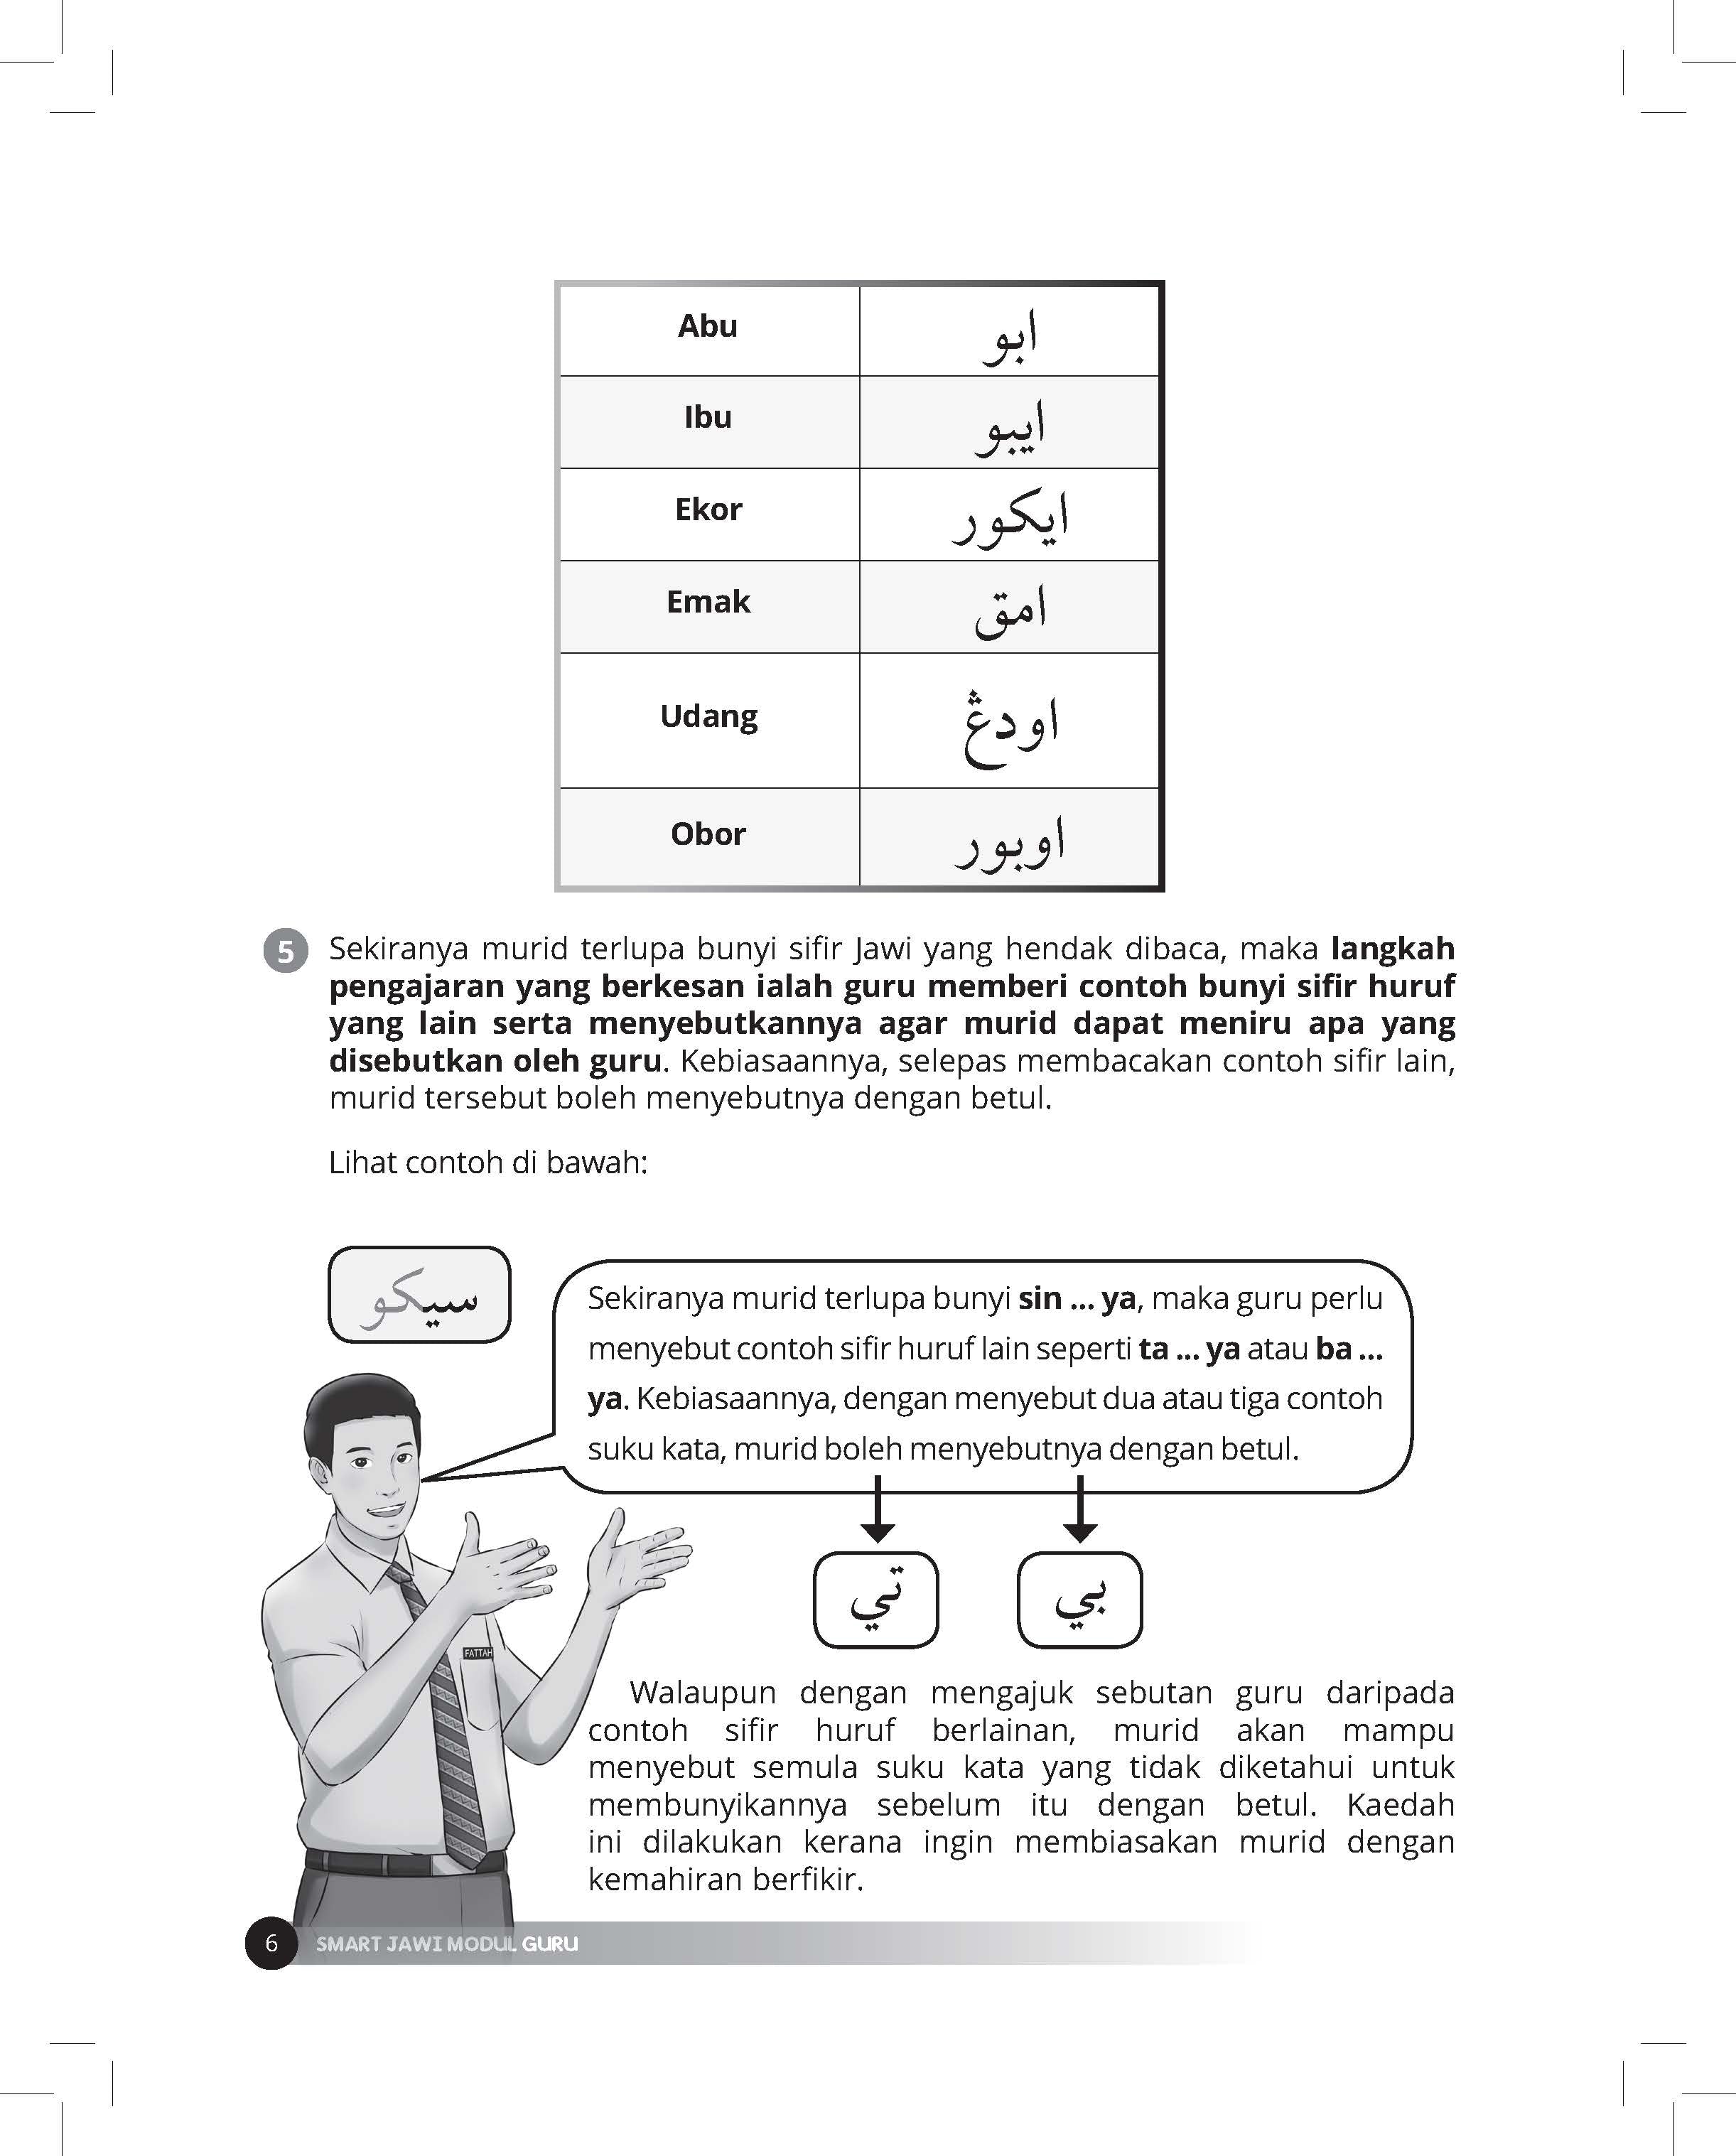 Smart Jawi - Kaedah BDN Baca Dengan Nombor (Modul Guru) - (TBBS1076)